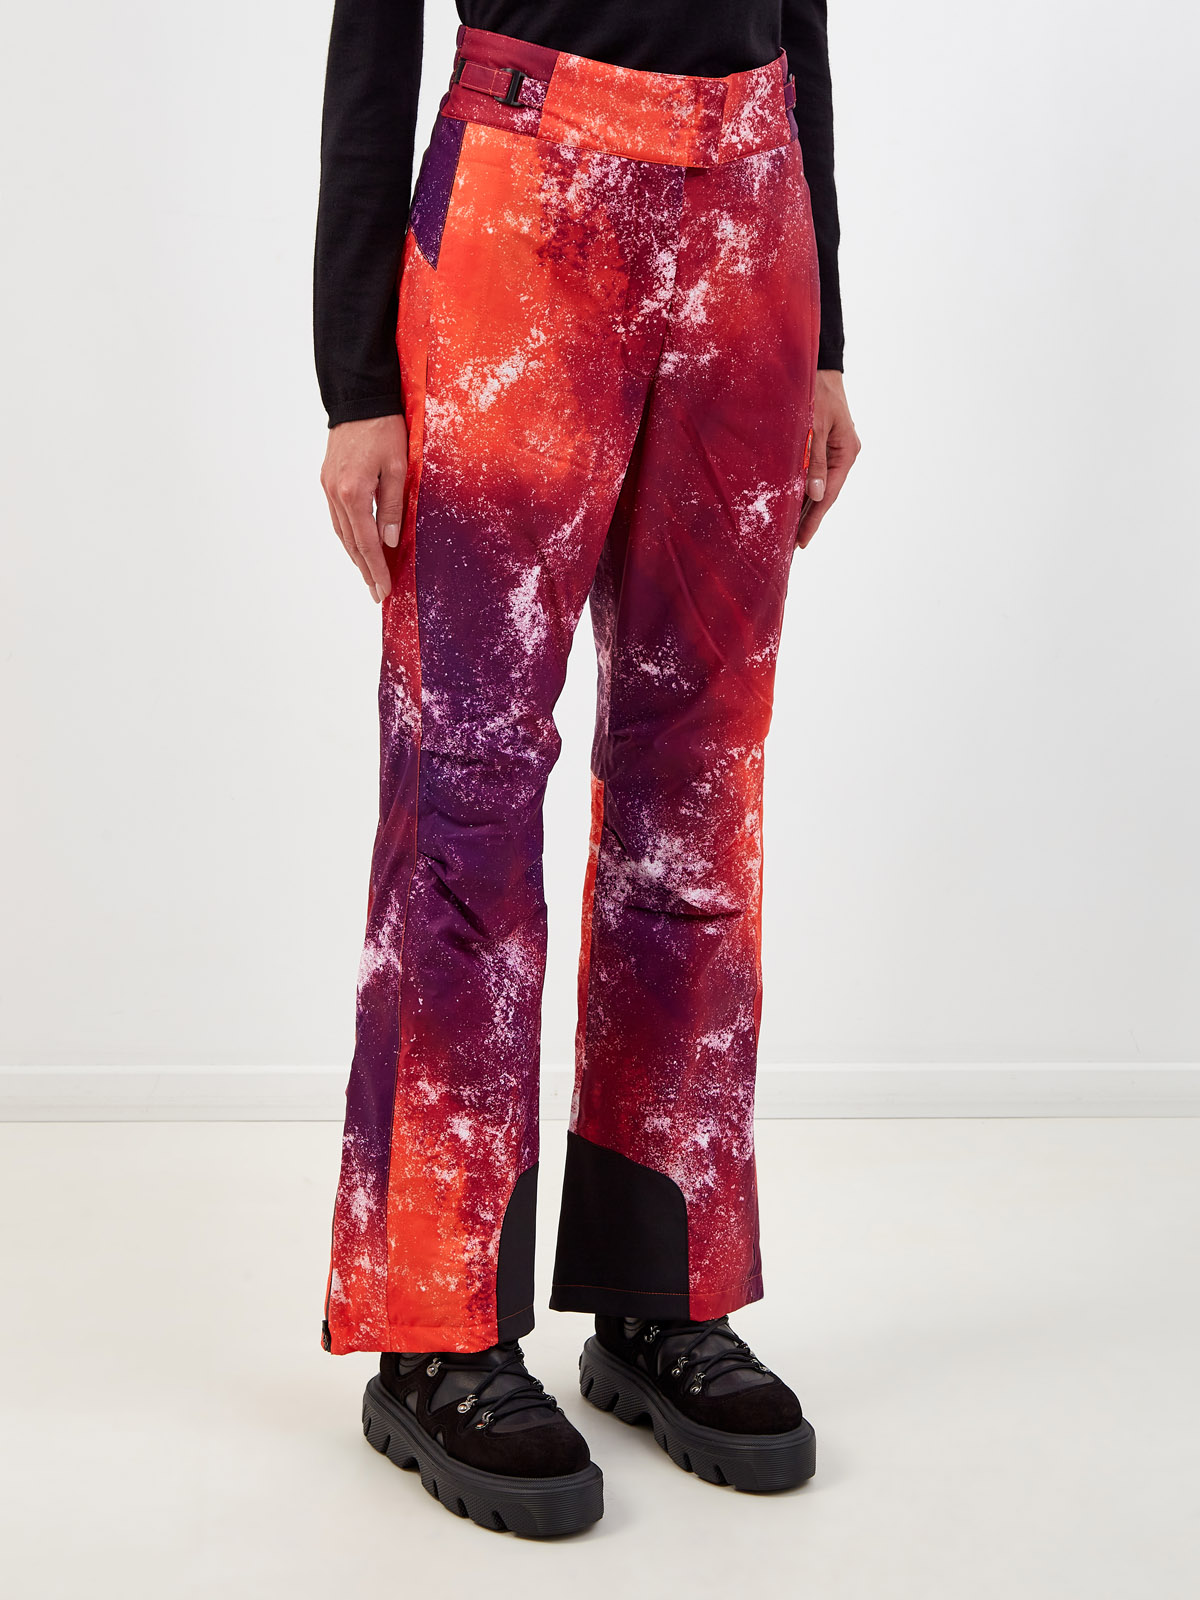 Горнолыжные брюки Blanche из трехслойного нейлона softshell PARAJUMPERS, цвет мульти, размер S;M;L;XL - фото 3